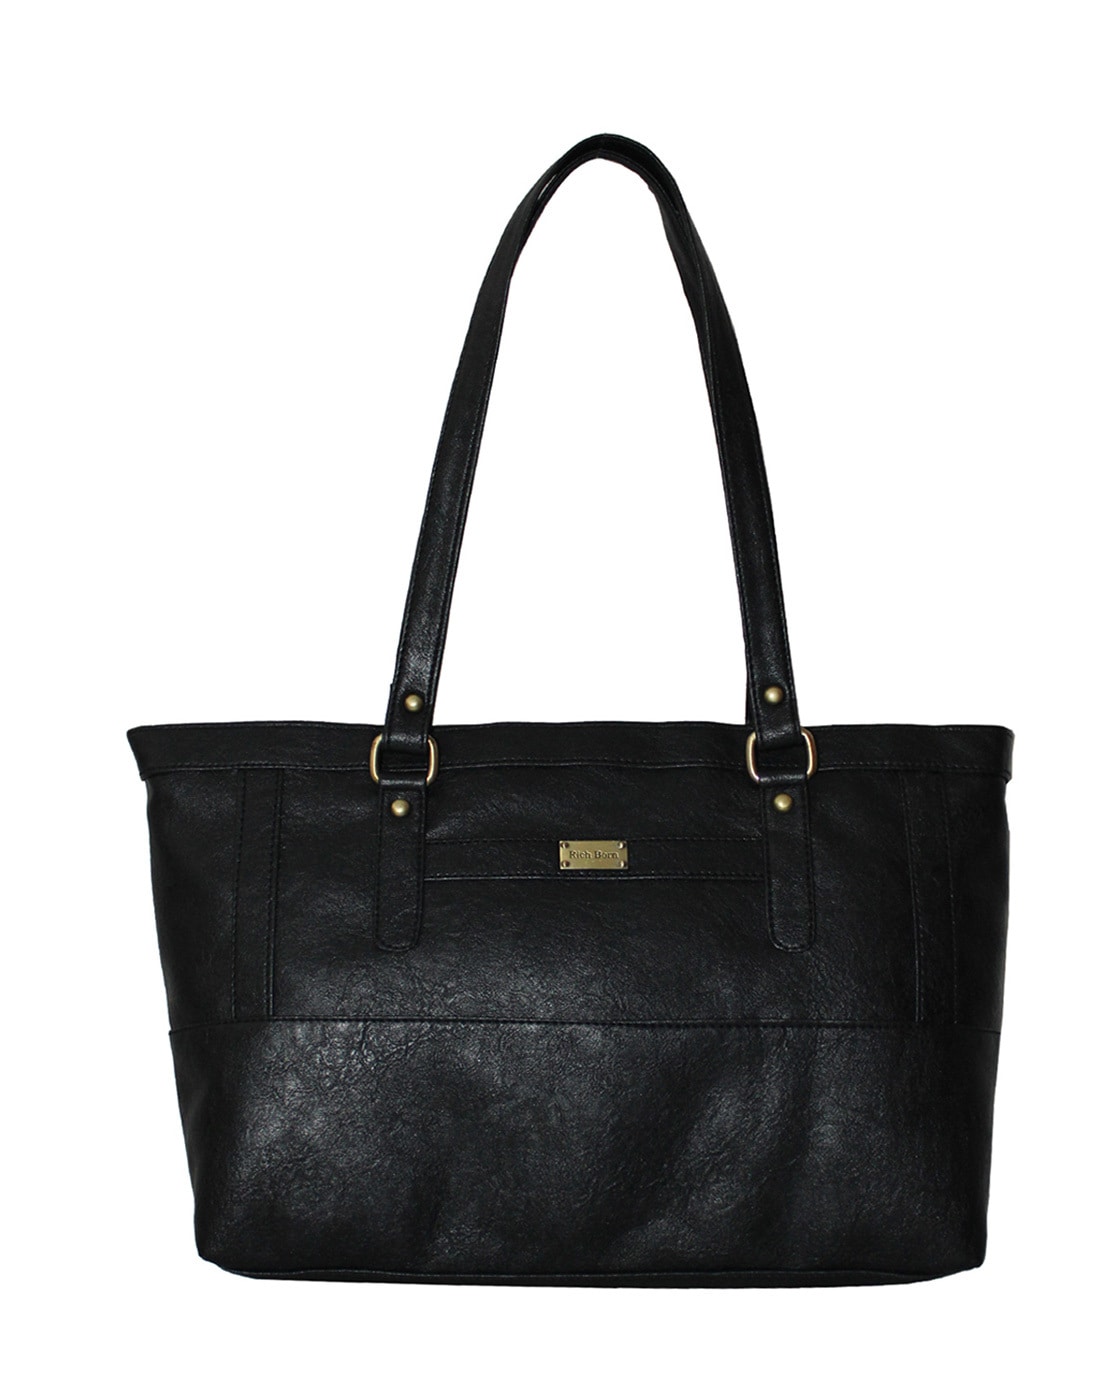 Buy Maroon Handbags for Women by Rich Born Online | Ajio.com